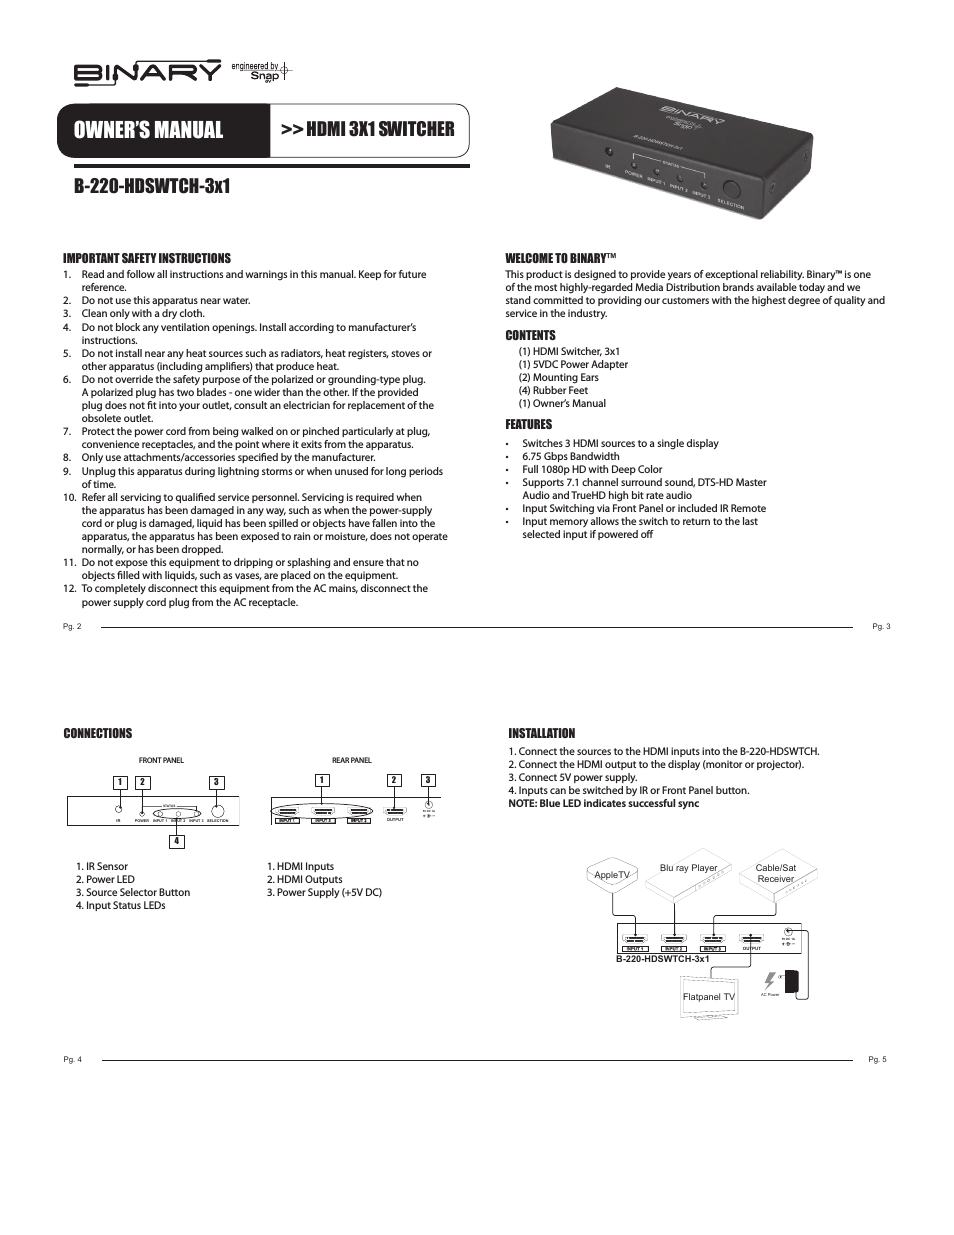 B-220-HDSWTCH-3X1 BINARY - HDMI 3X1 SWITCHER